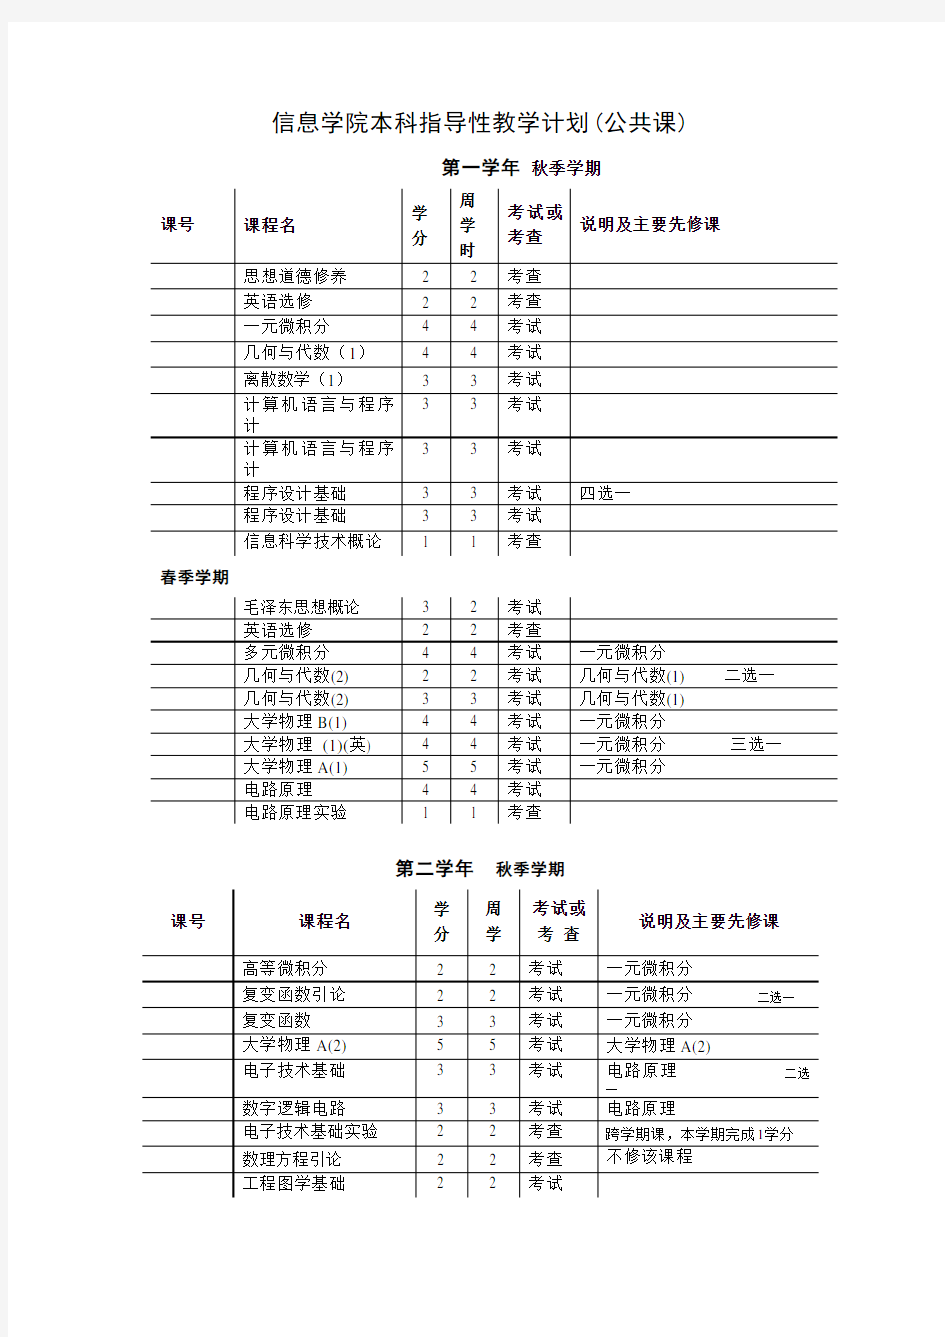 (完整word版)清华大学计算机科学与技术专业课程表